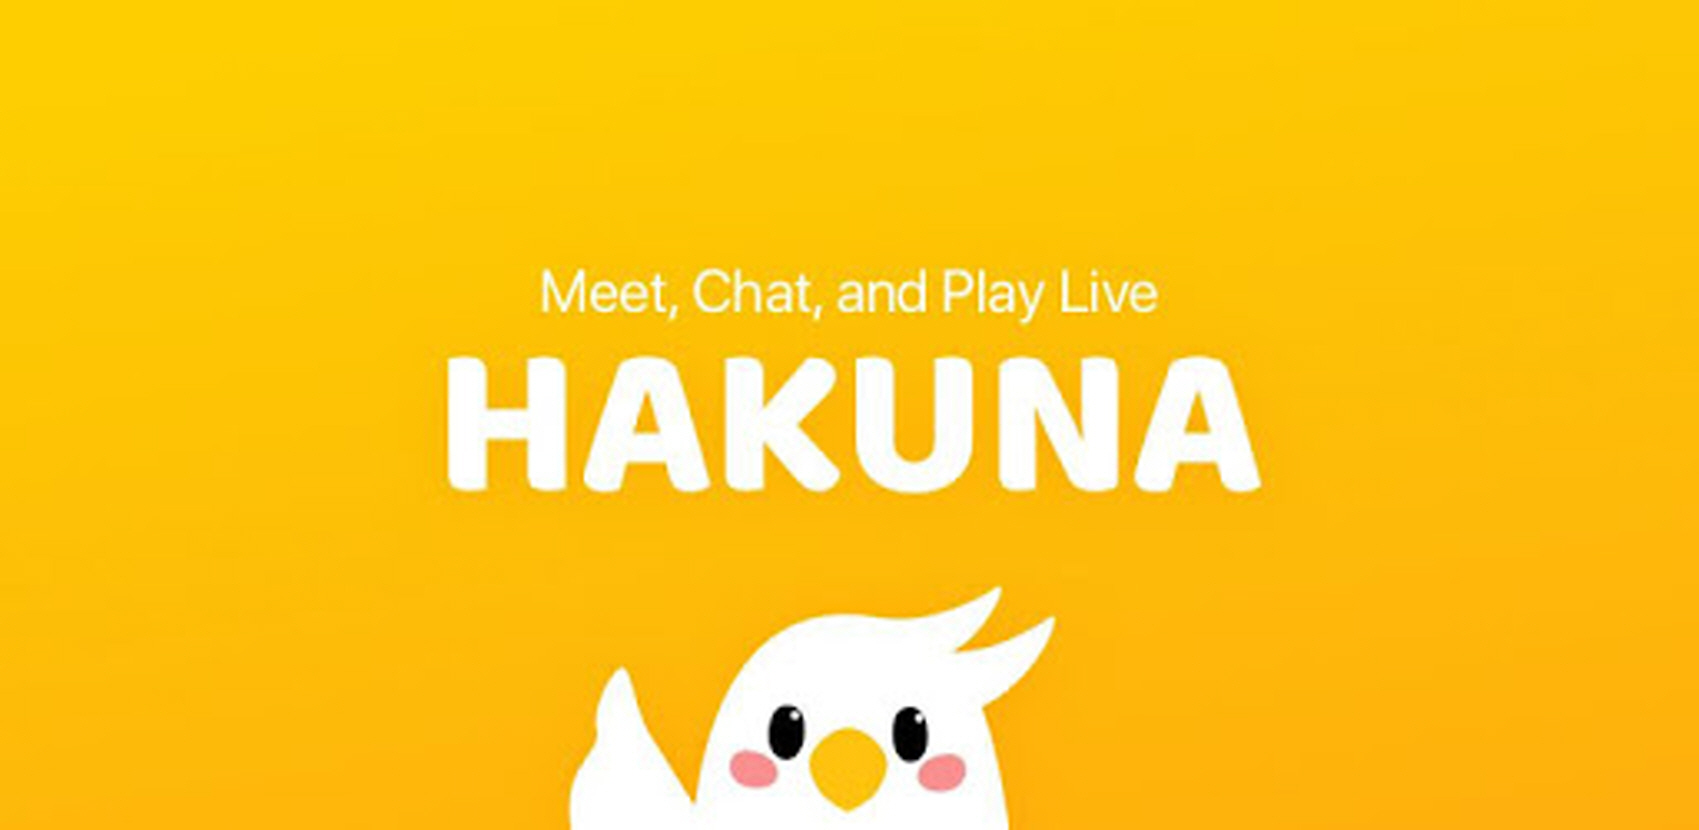 하쿠나 라이브 - Live 방송 PC 버전, 컴퓨터에서 설치하고 안전하게 즐기자 - 녹스 앱플레이어